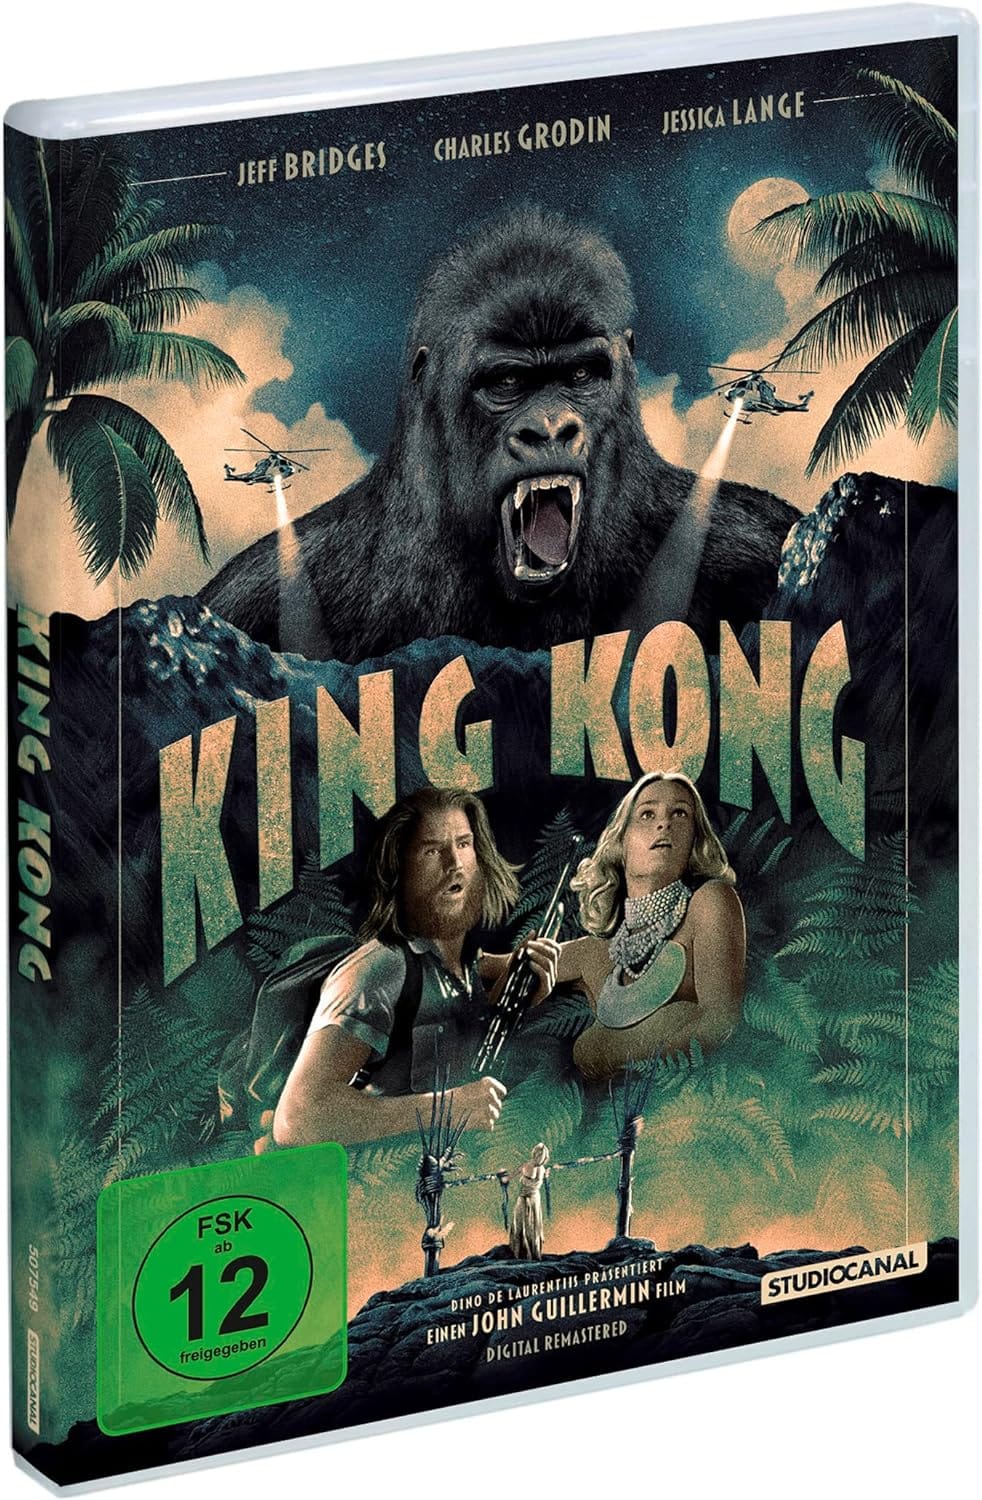 King Kong (1976): A Forgotten Gem Hidden Behind Hype